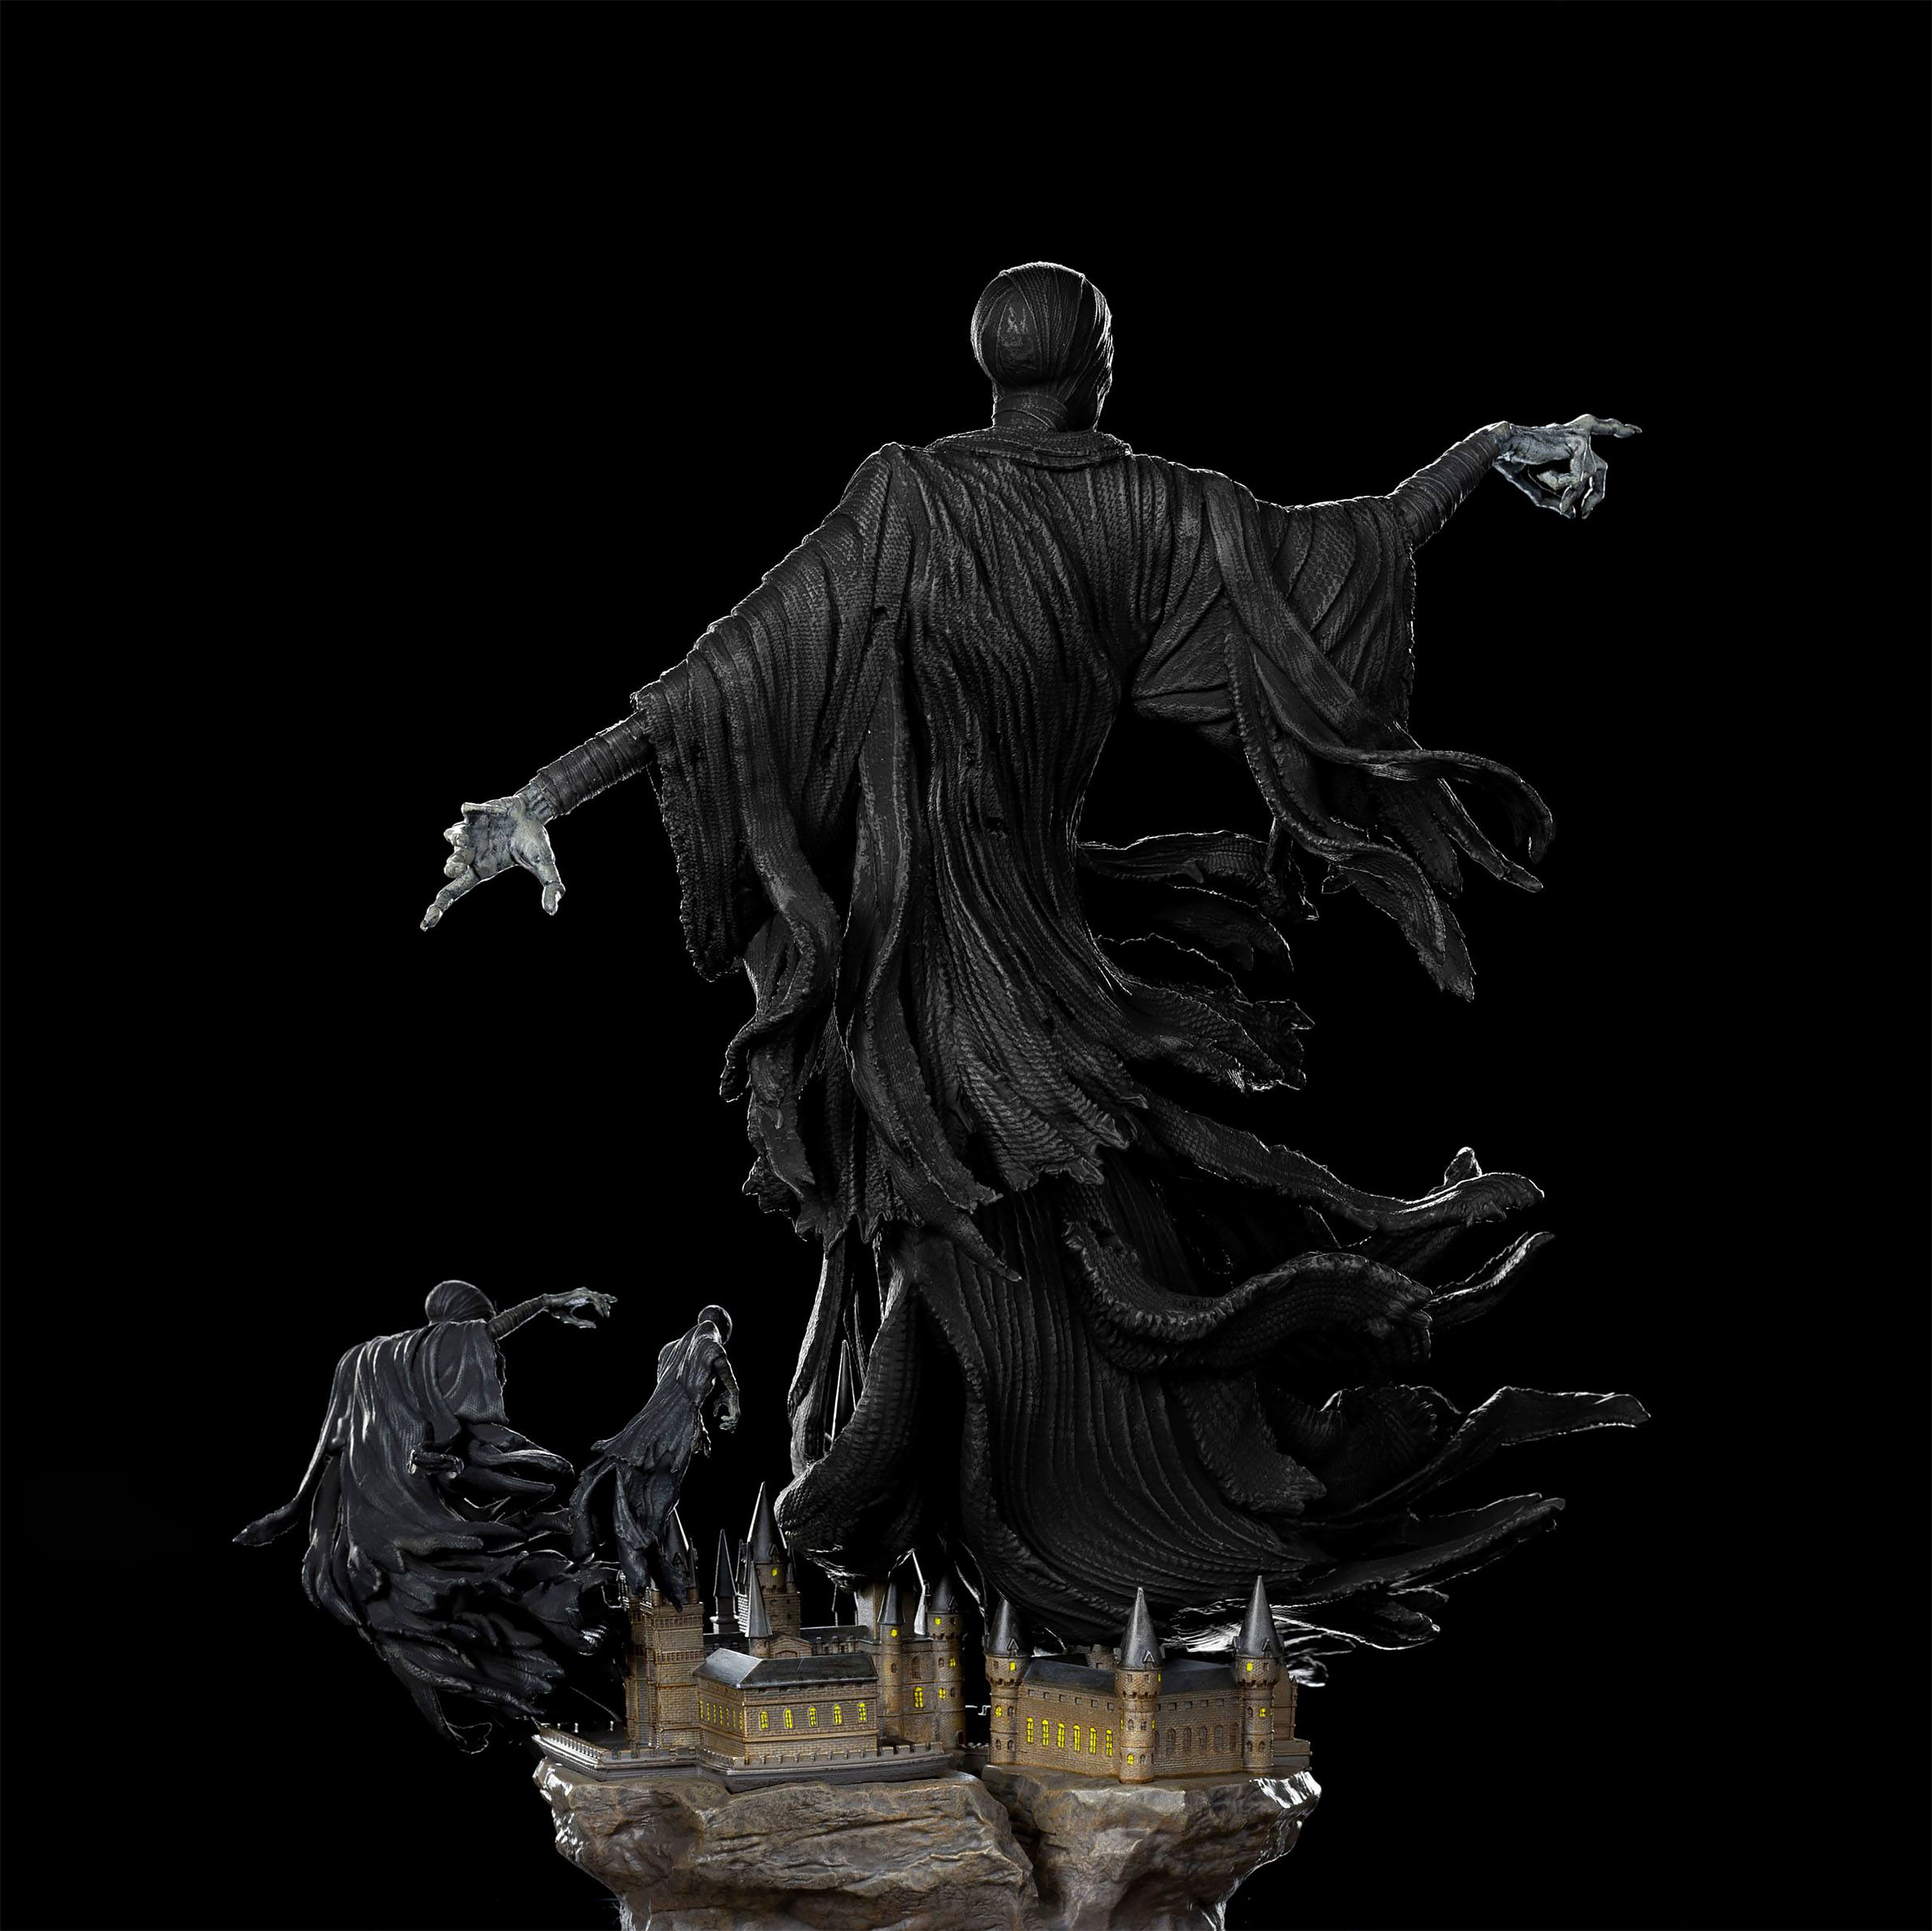 Harry Potter - Dementor Art Scale Beeld 1:10